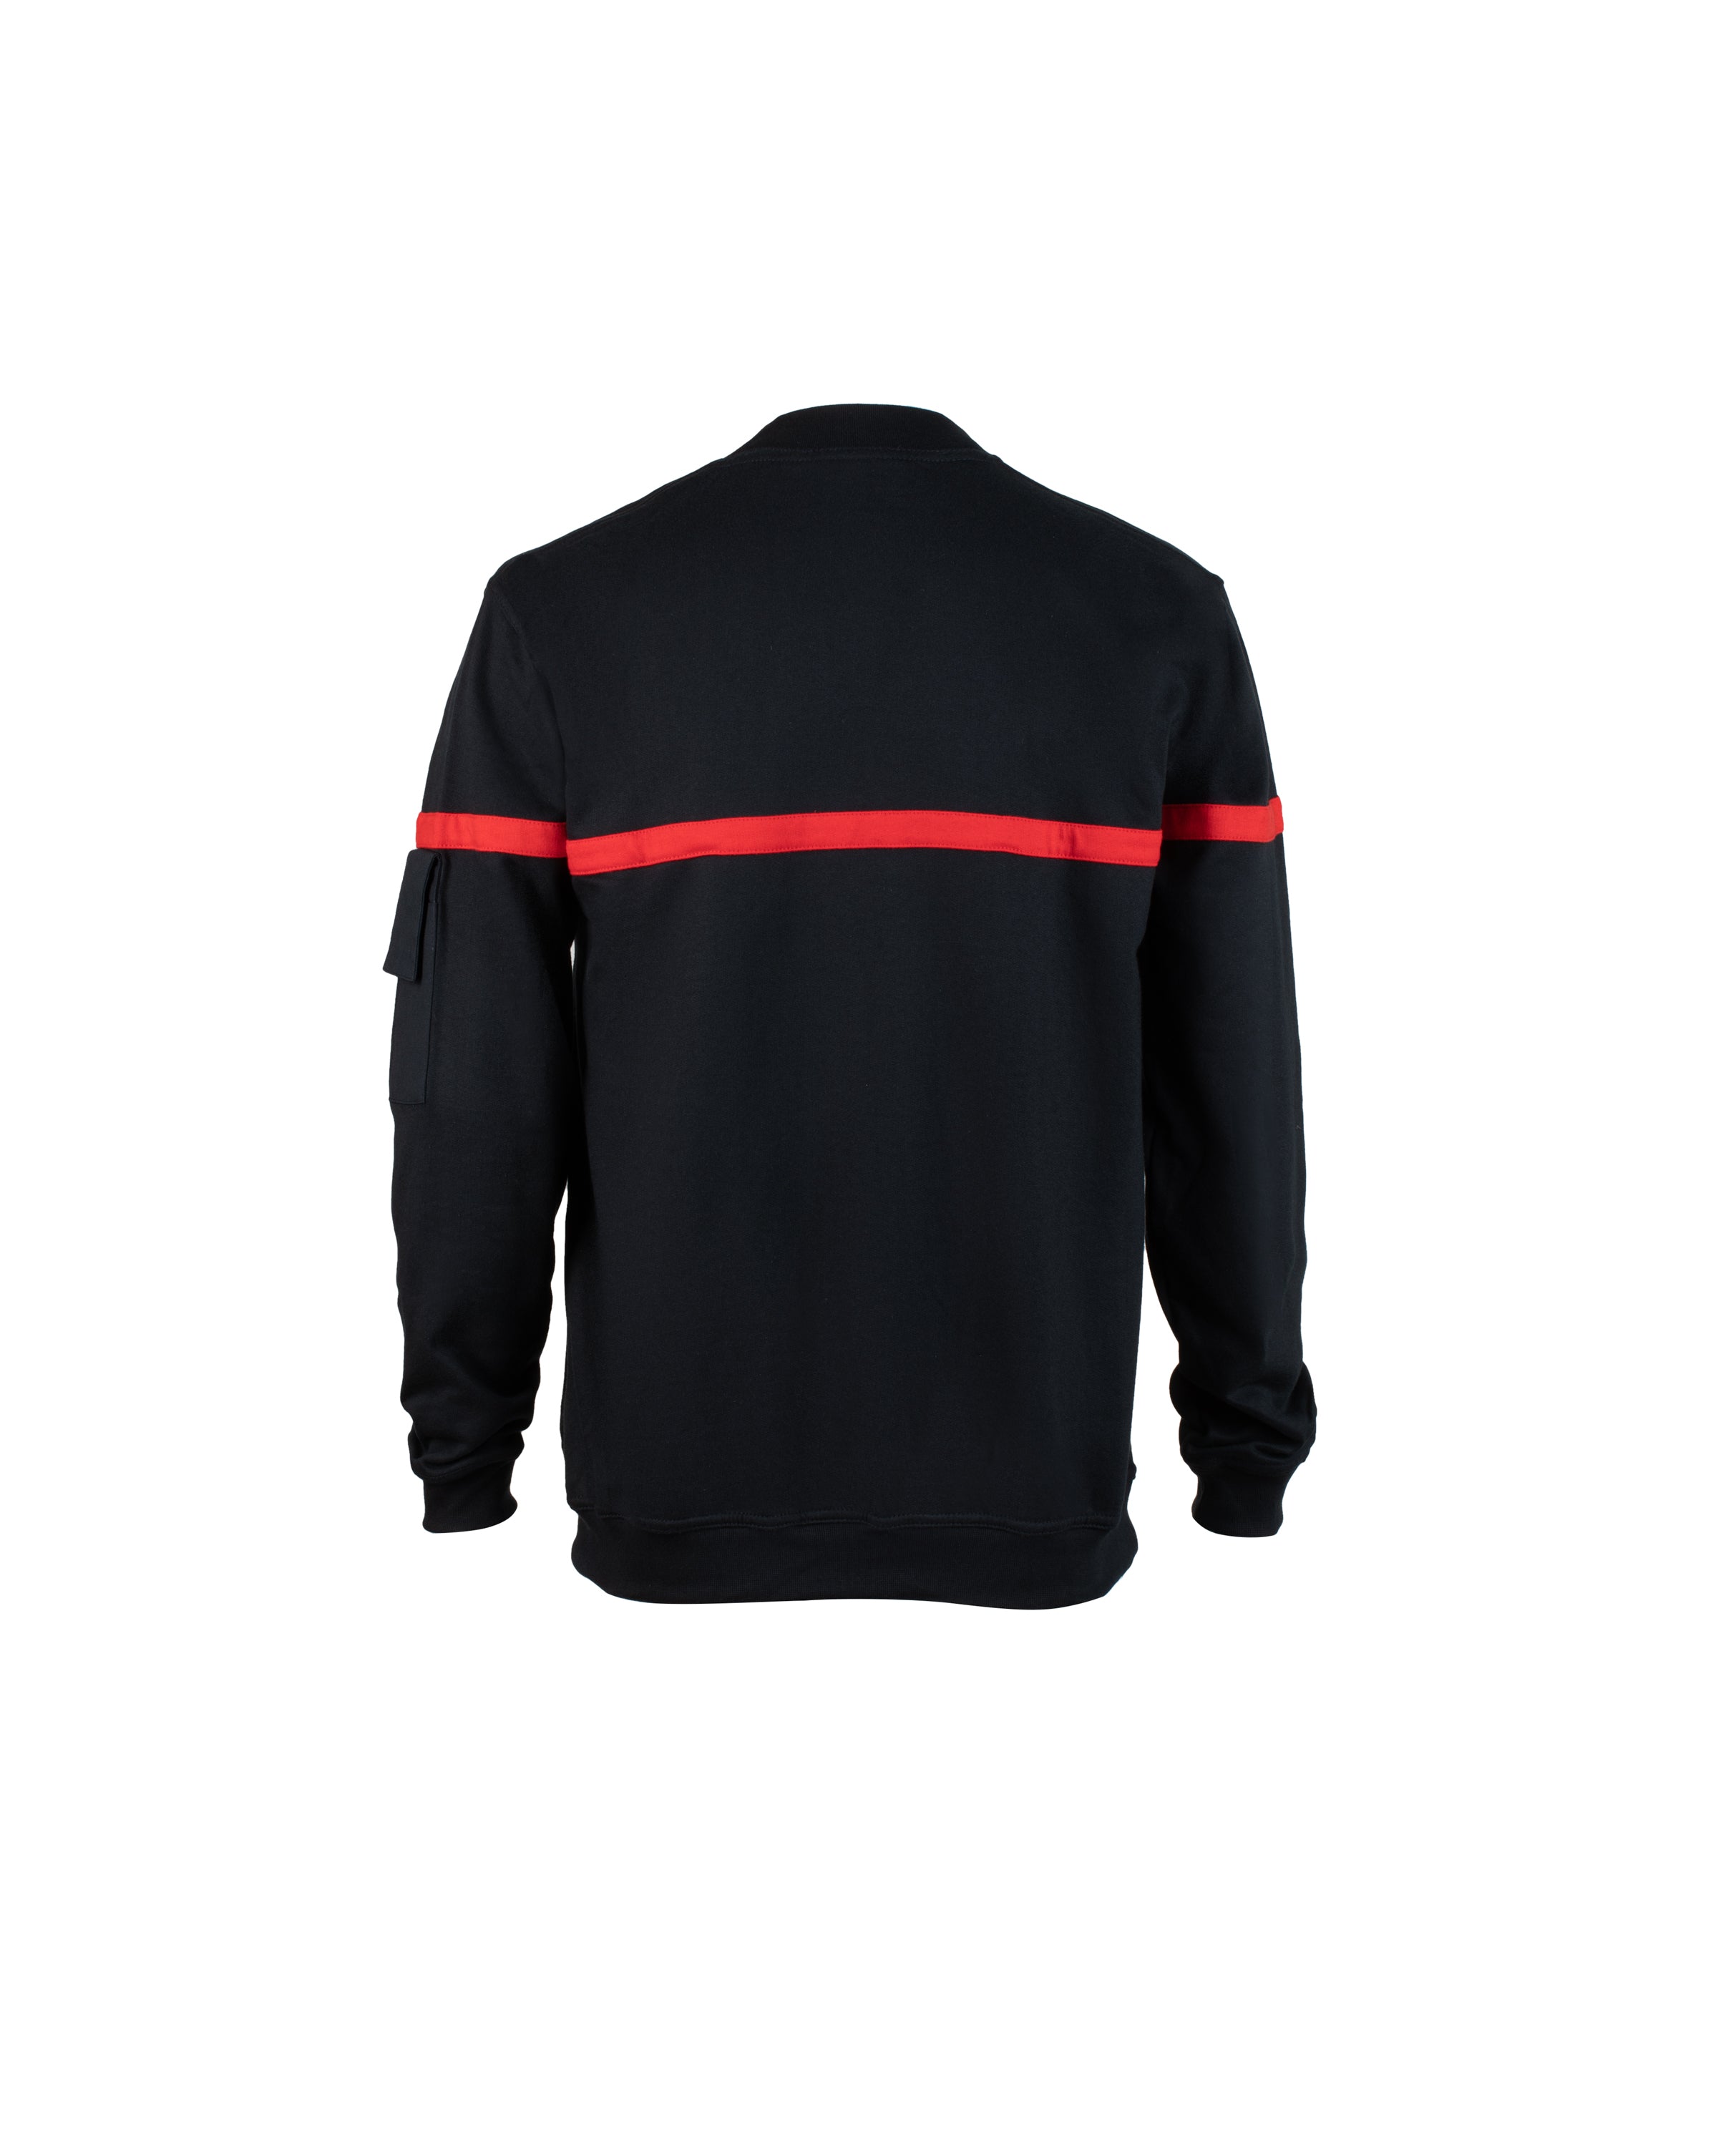 Feuerwehr-Sweatshirts - 50081510